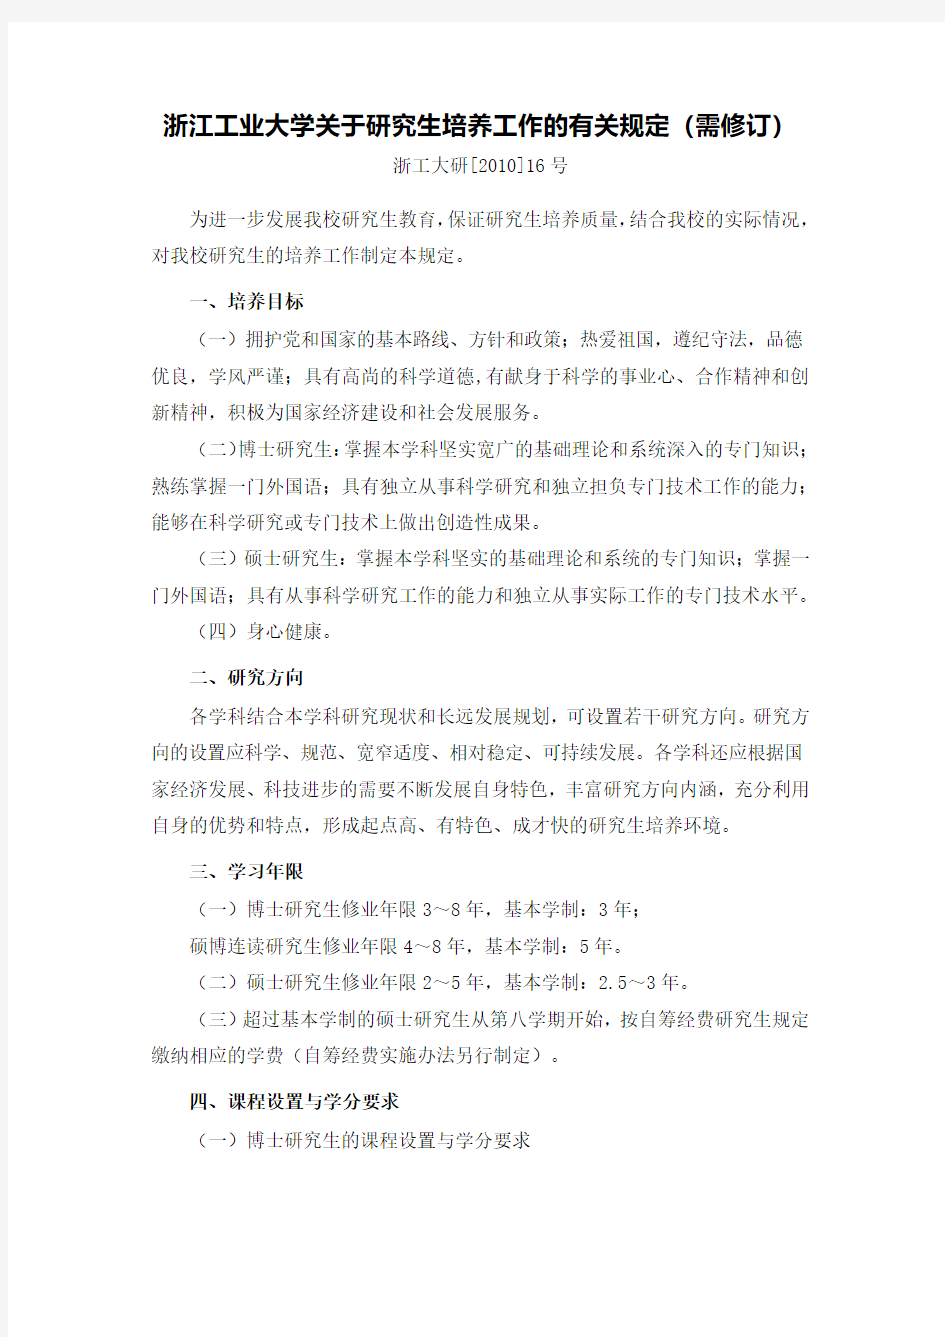 浙江工业大学关于研究生培养工作的有关规定需修订